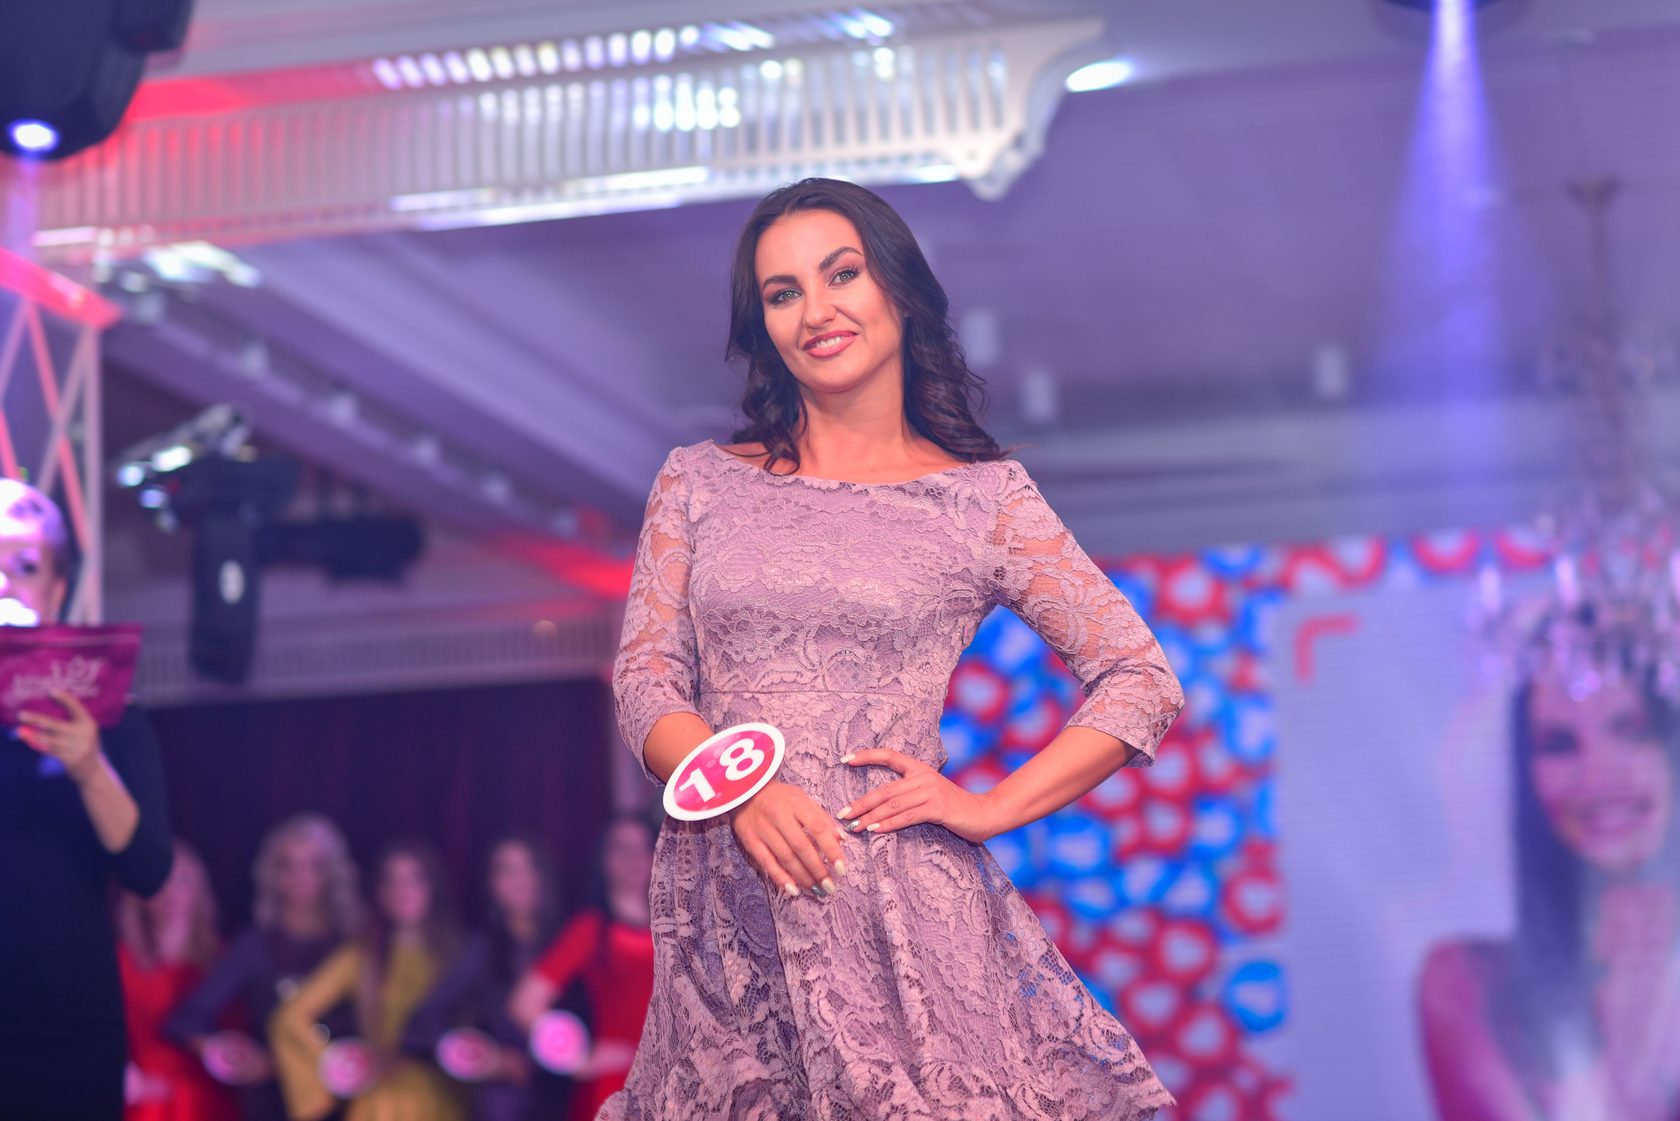 Miss Moscow Mini 2019 - О конкурсе.